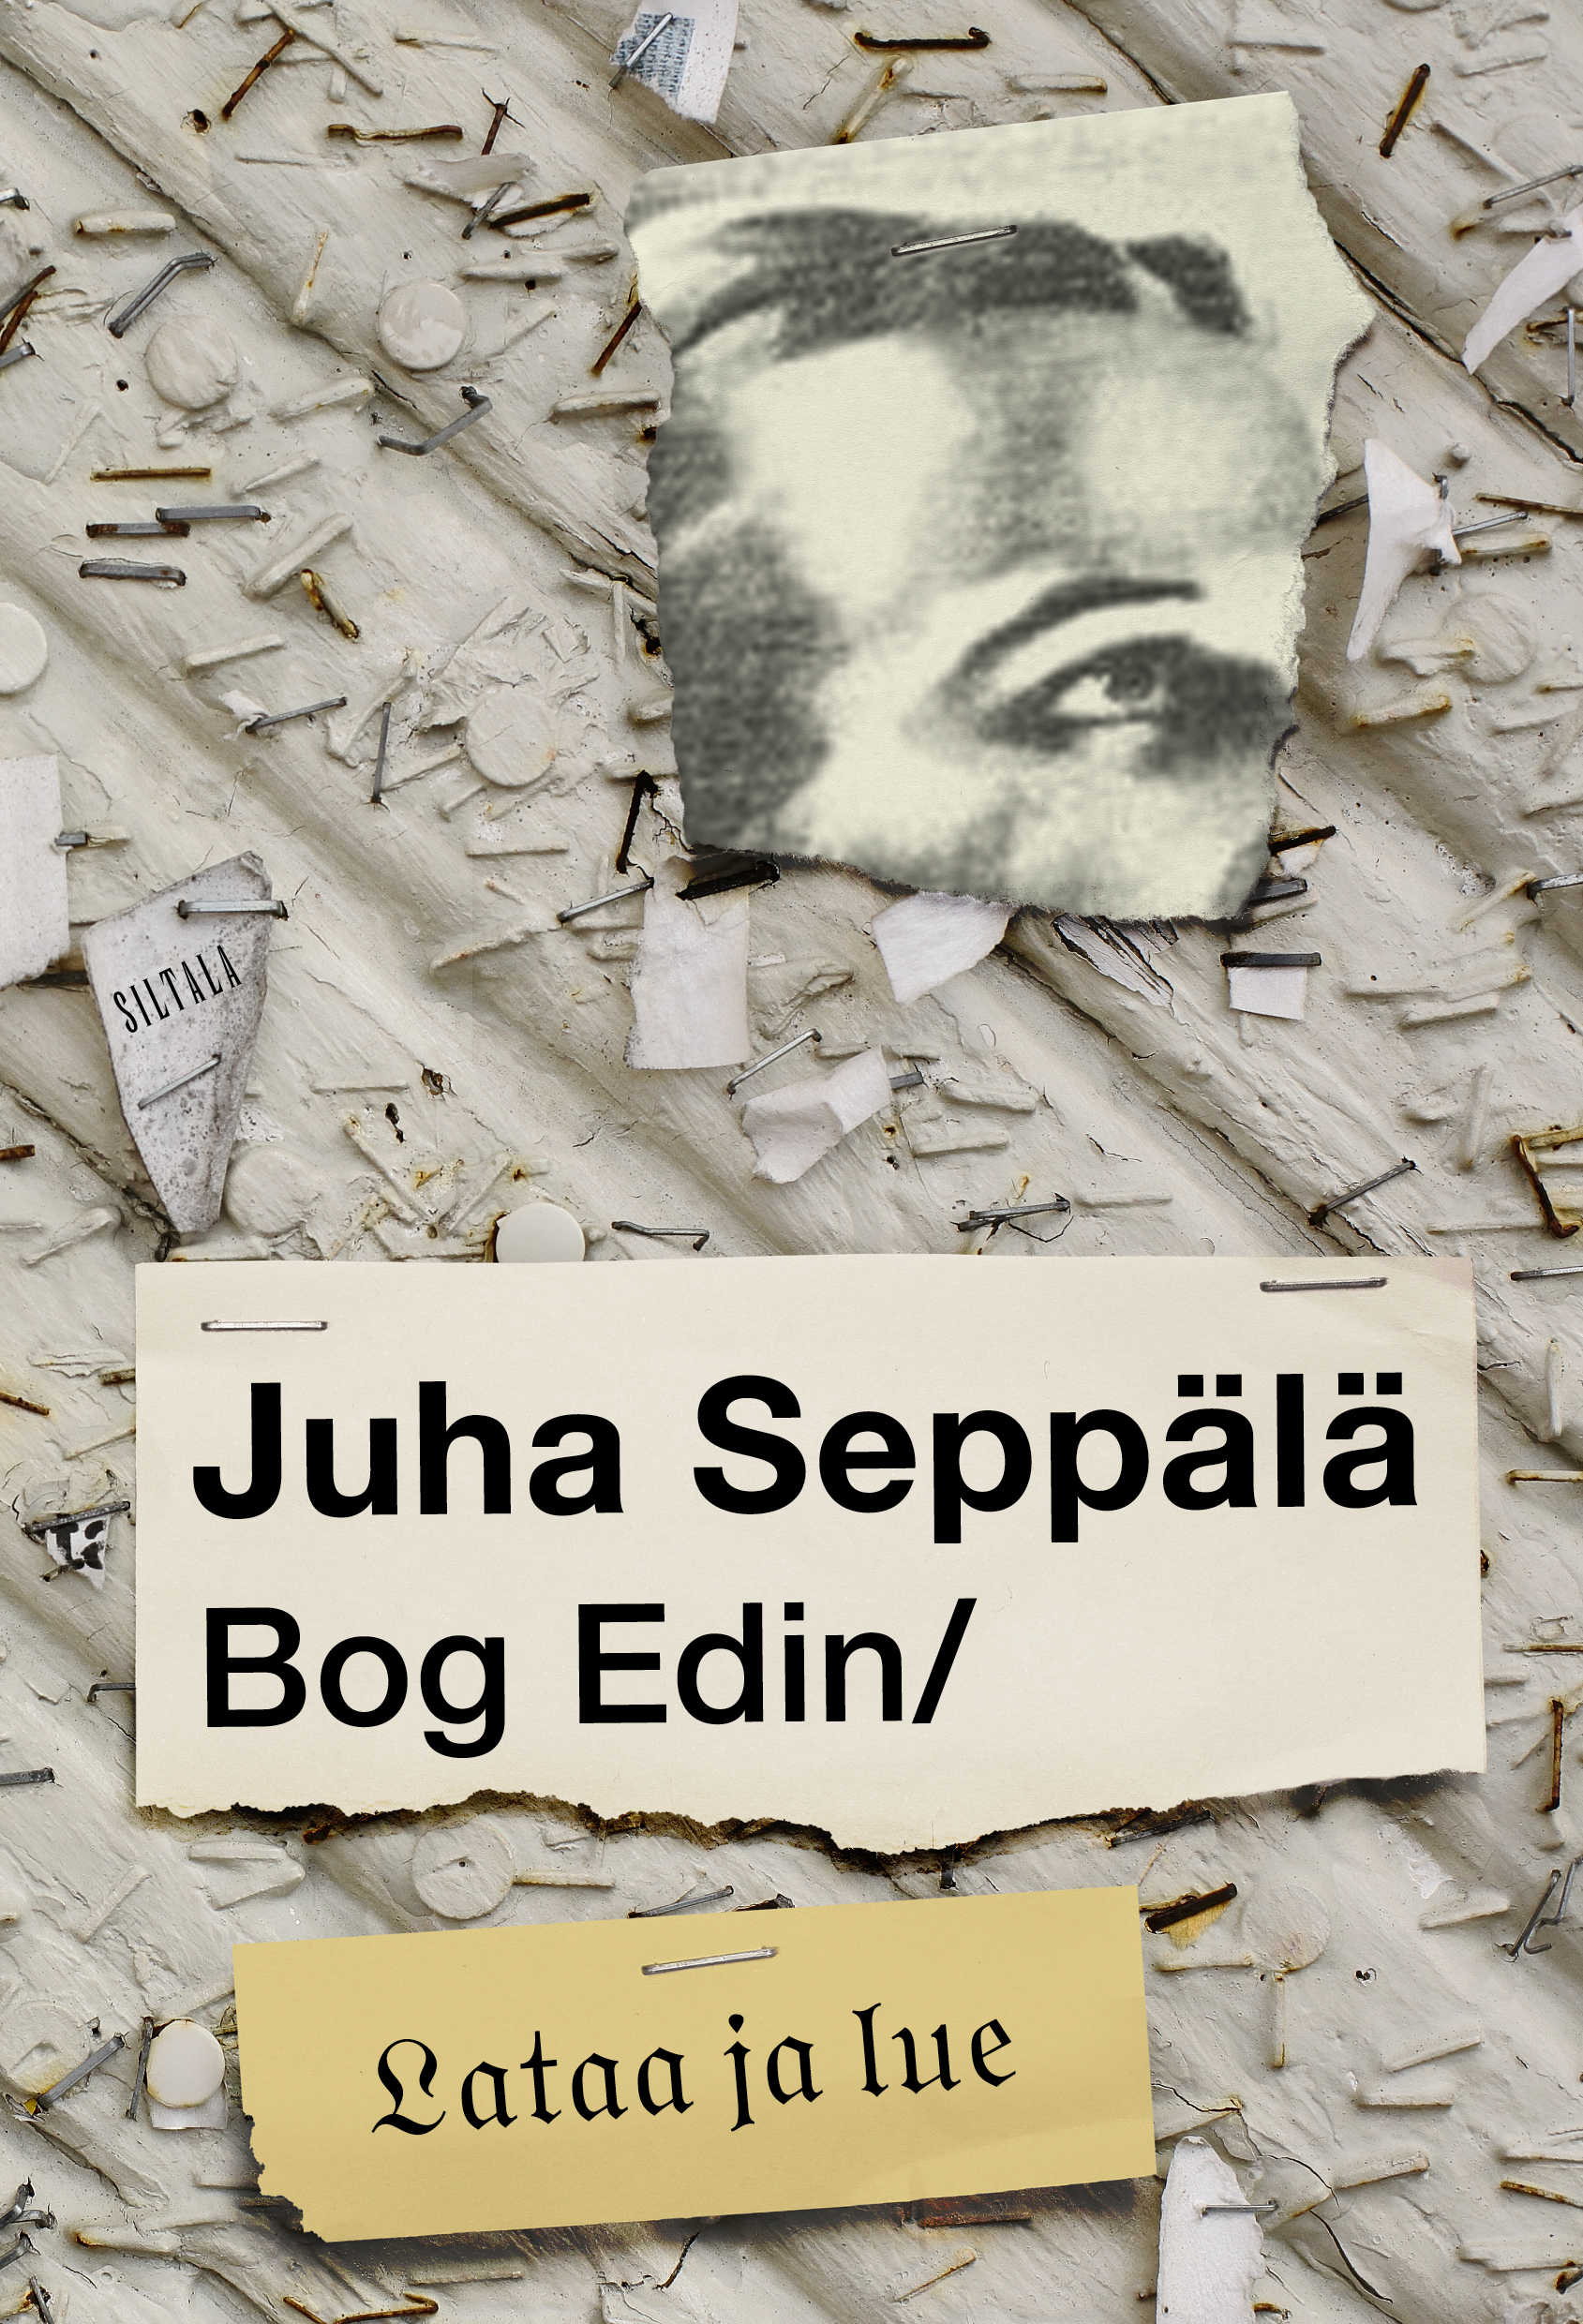 Seppälä, Juha - Bog Edin / Lataa ja lue: Kolumneja viideltä vuosikymmeniltä, ebook